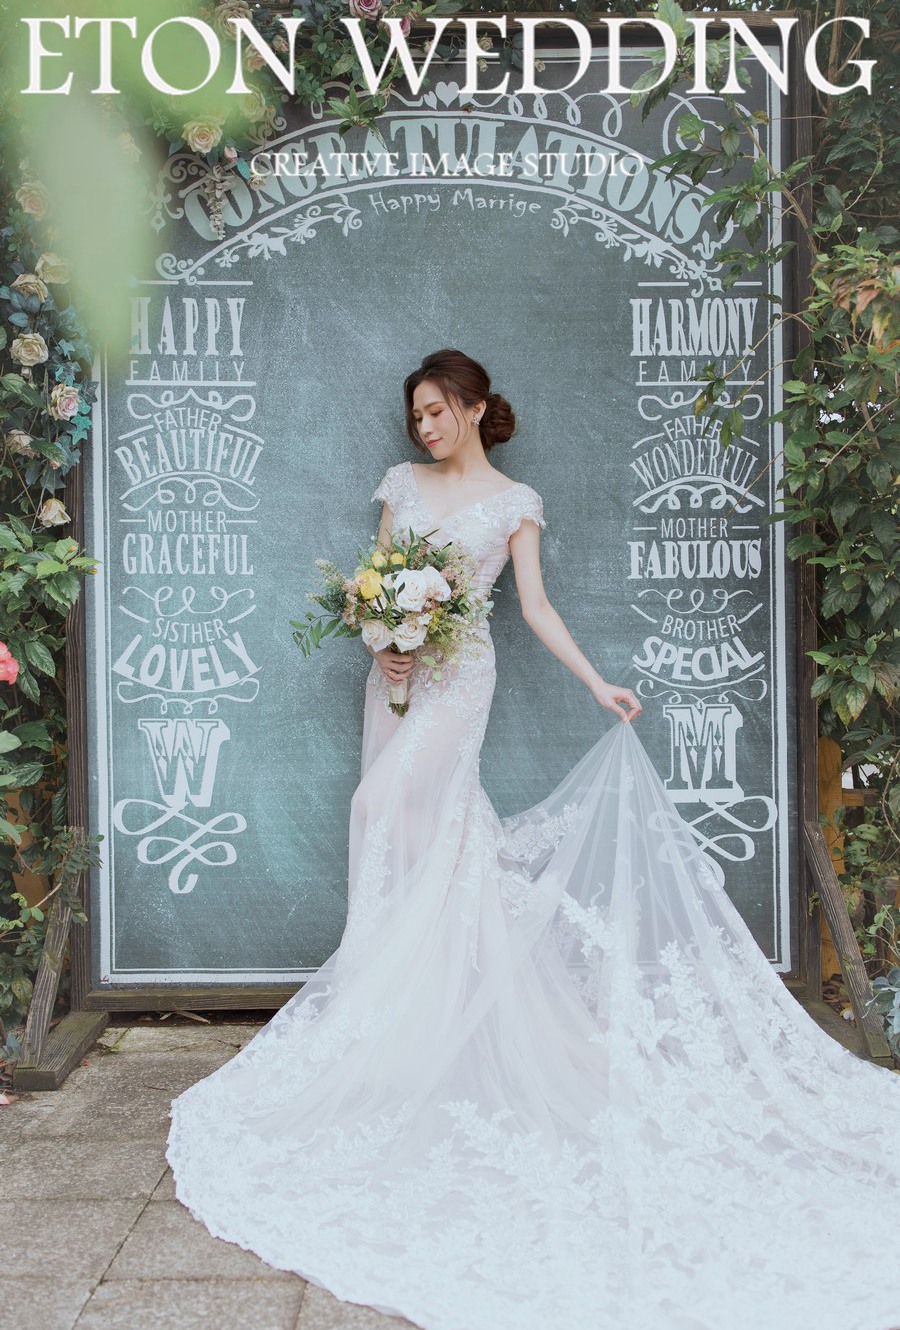 韓系婚紗造型,韓風婚紗照推薦,韓式婚紗推薦,韓系婚紗照風格